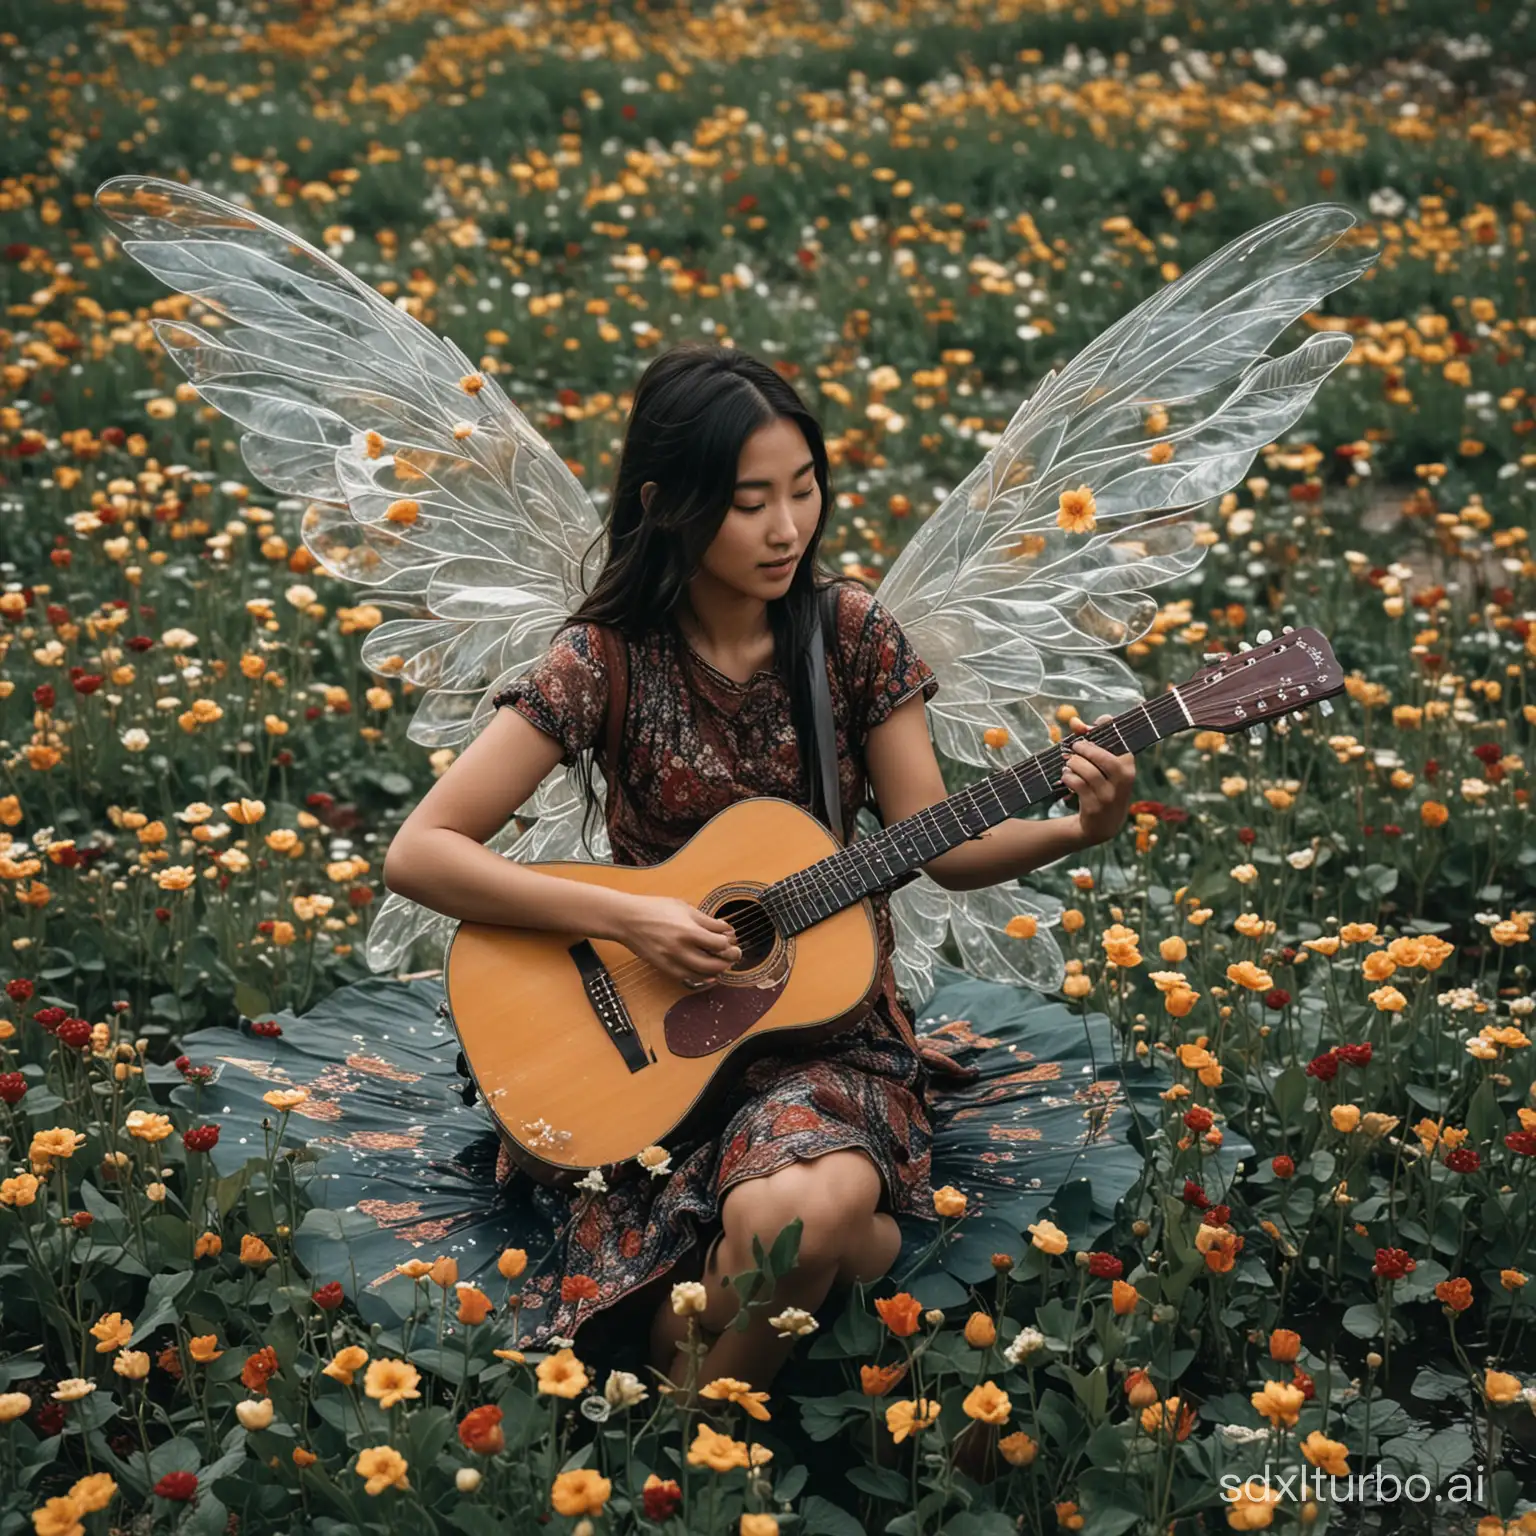 一个女孩在格桑花海浮空弹吉他，背上一对透明的翅膀